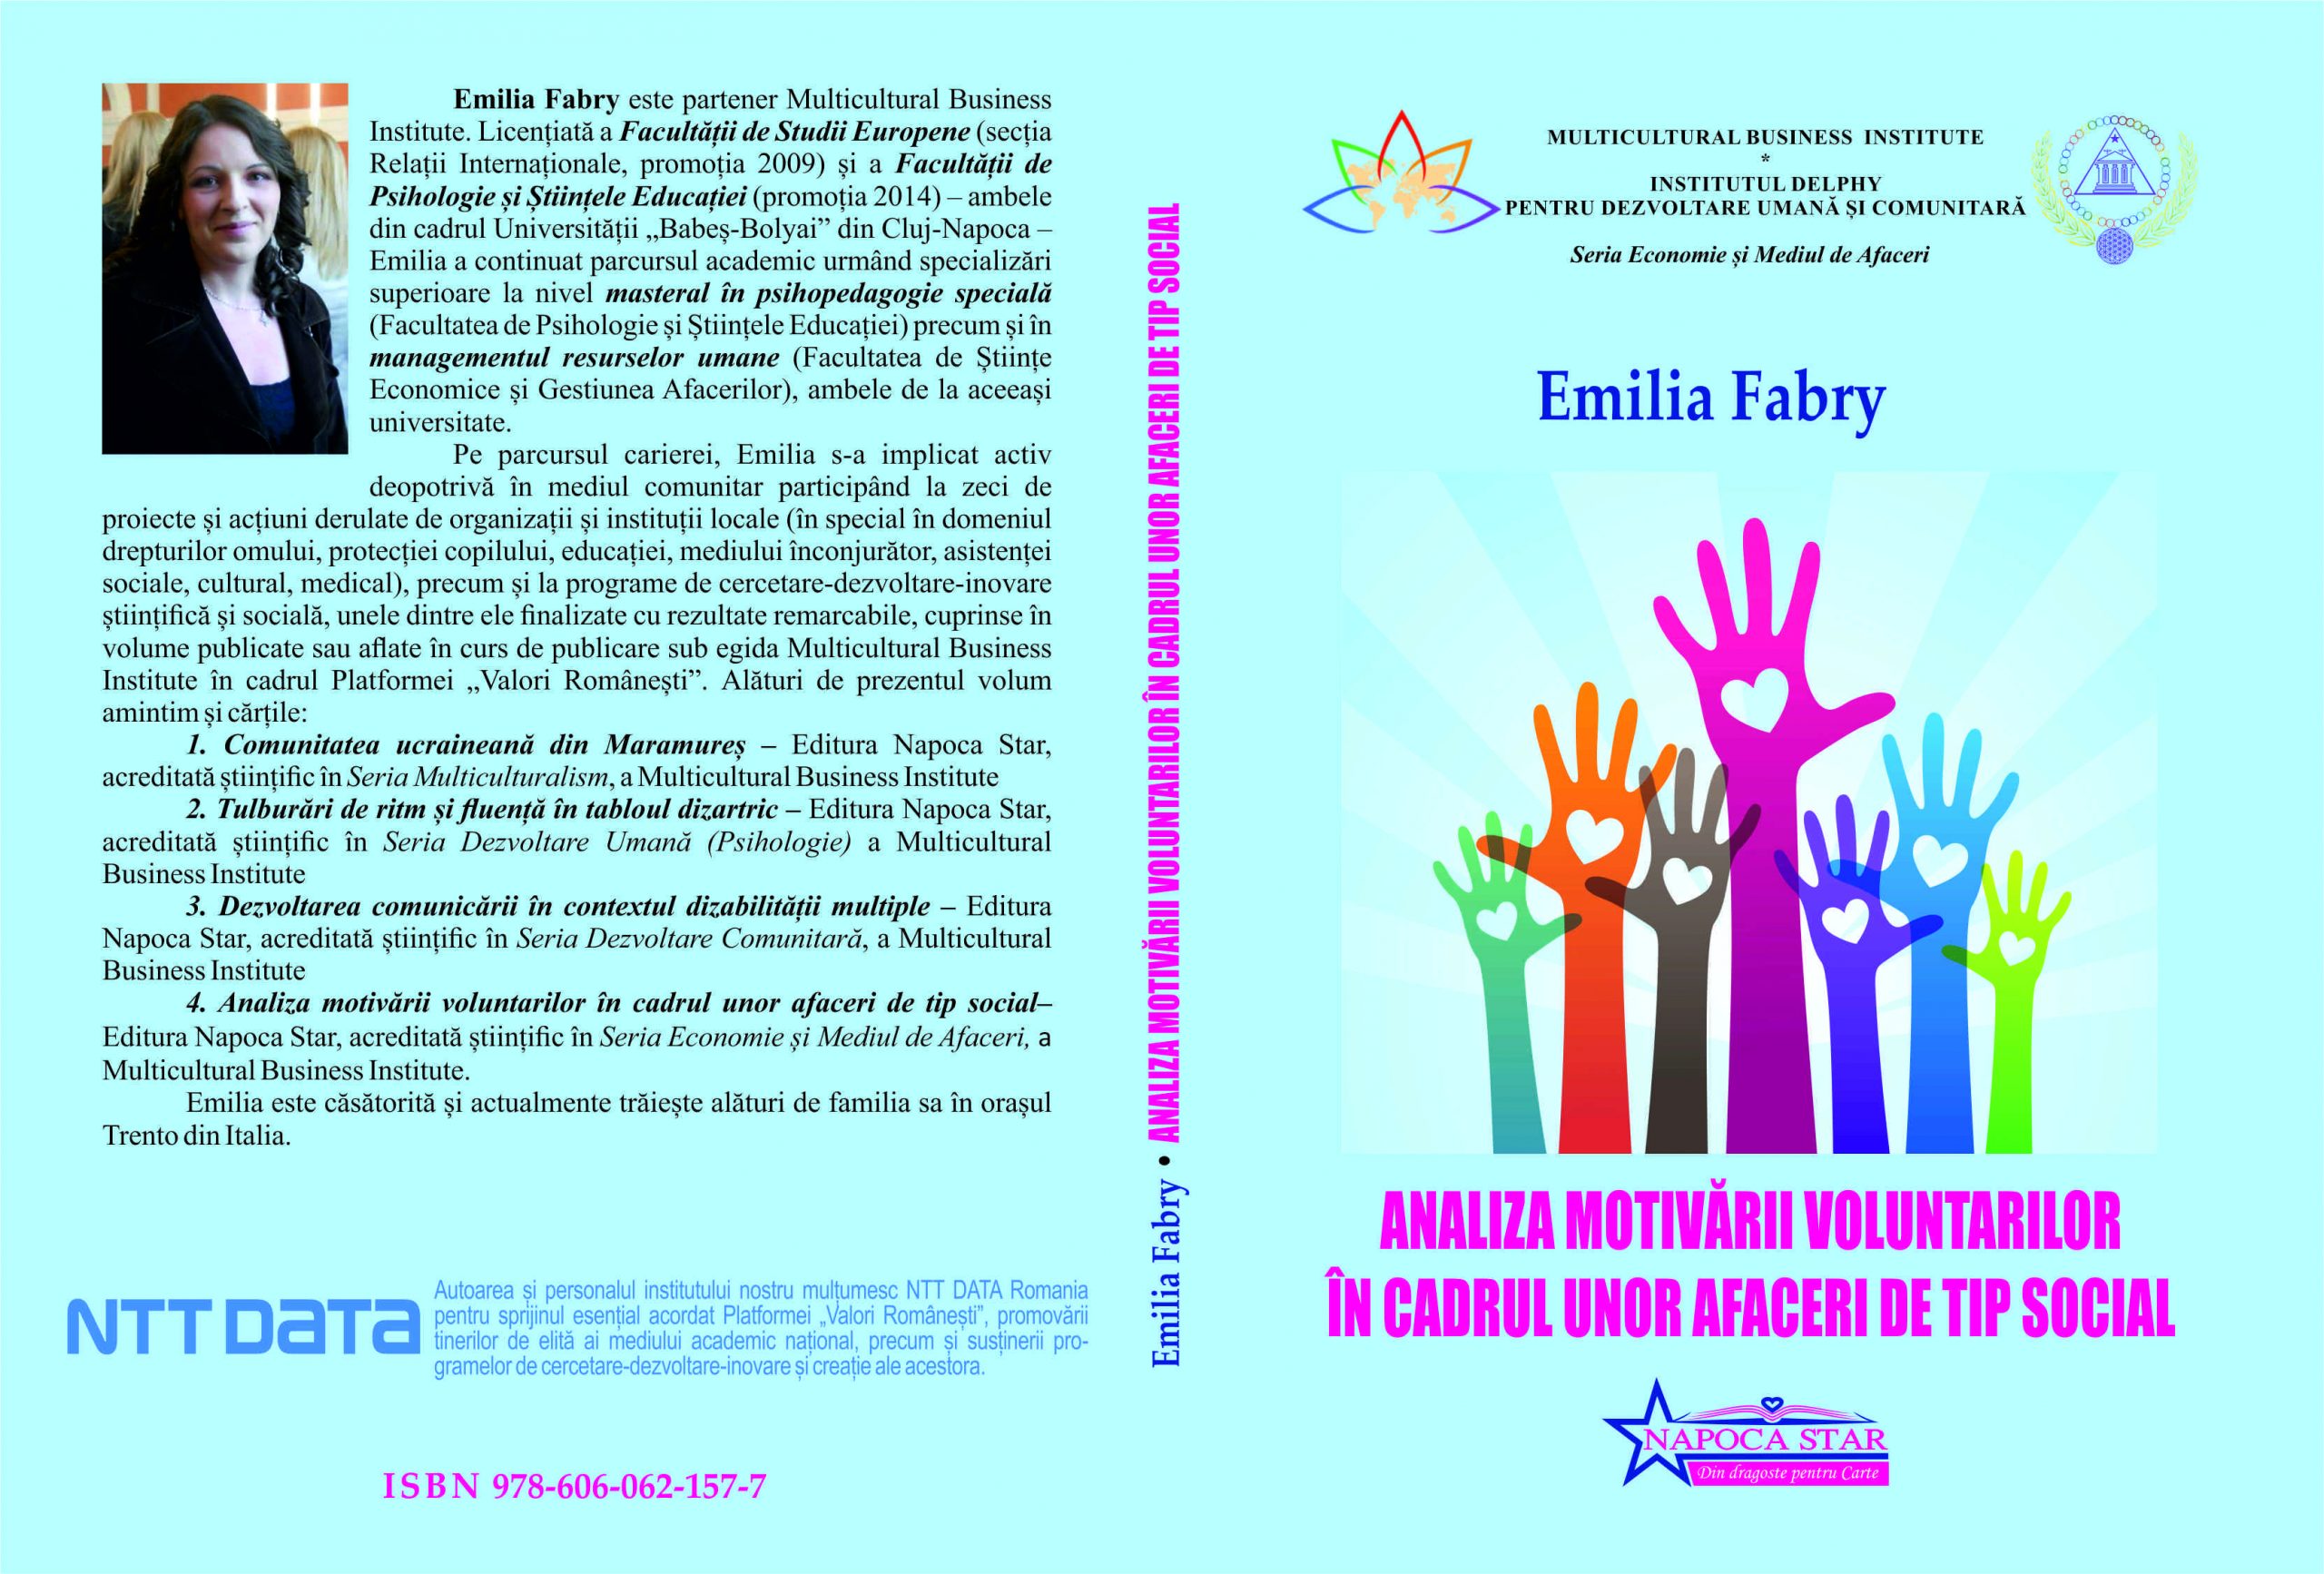 Analiza motivăii voluntarilor - Emilia Fabry